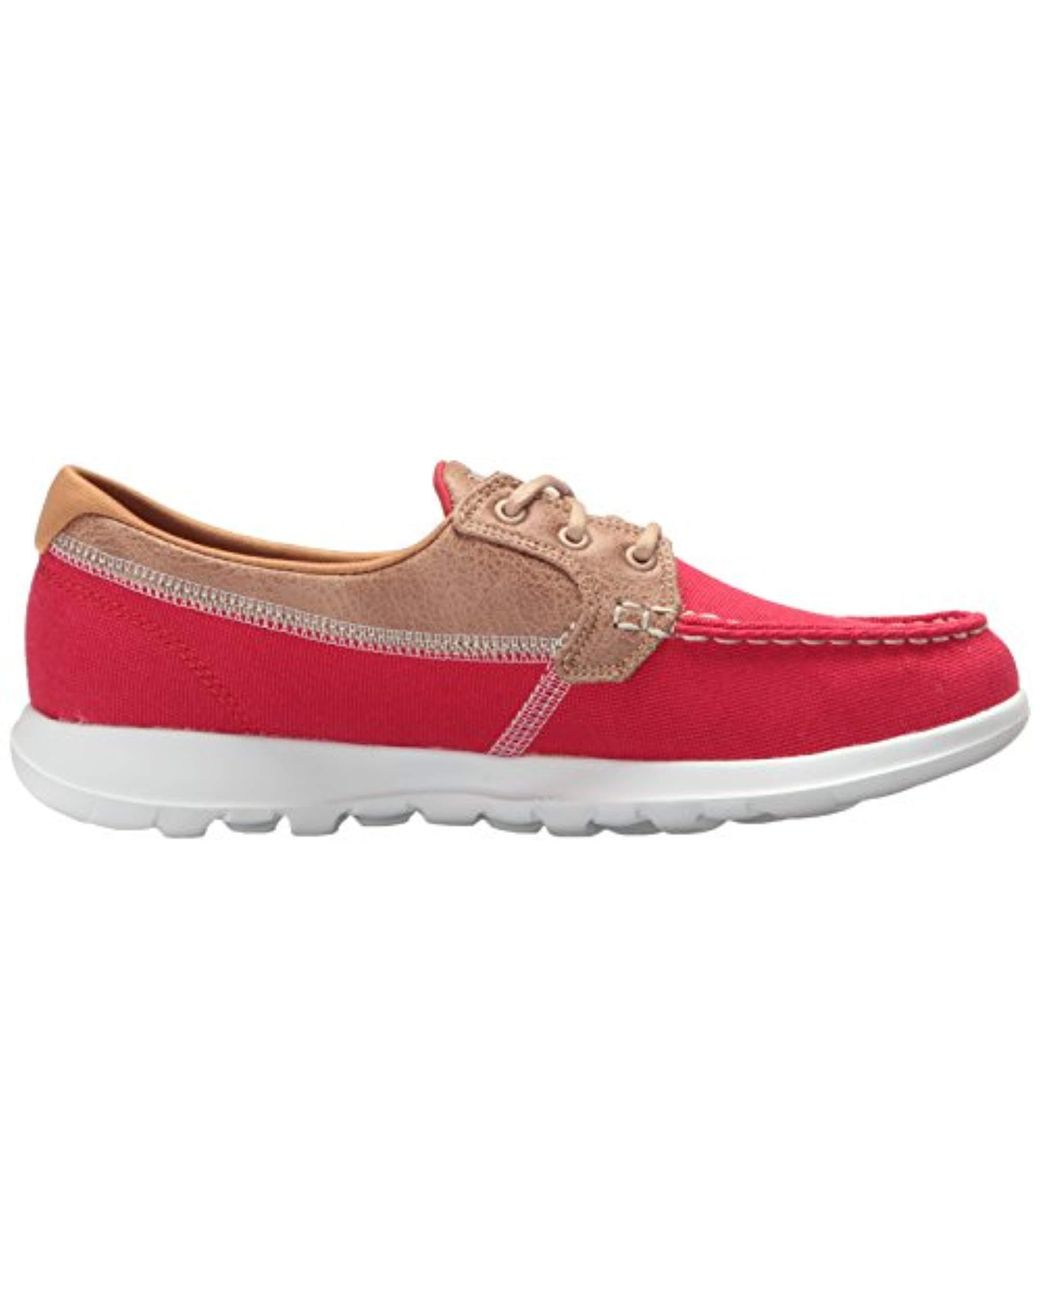 Skechers Canvas Go Walk Lite-15430 Boat Shoe in Red | Lyst